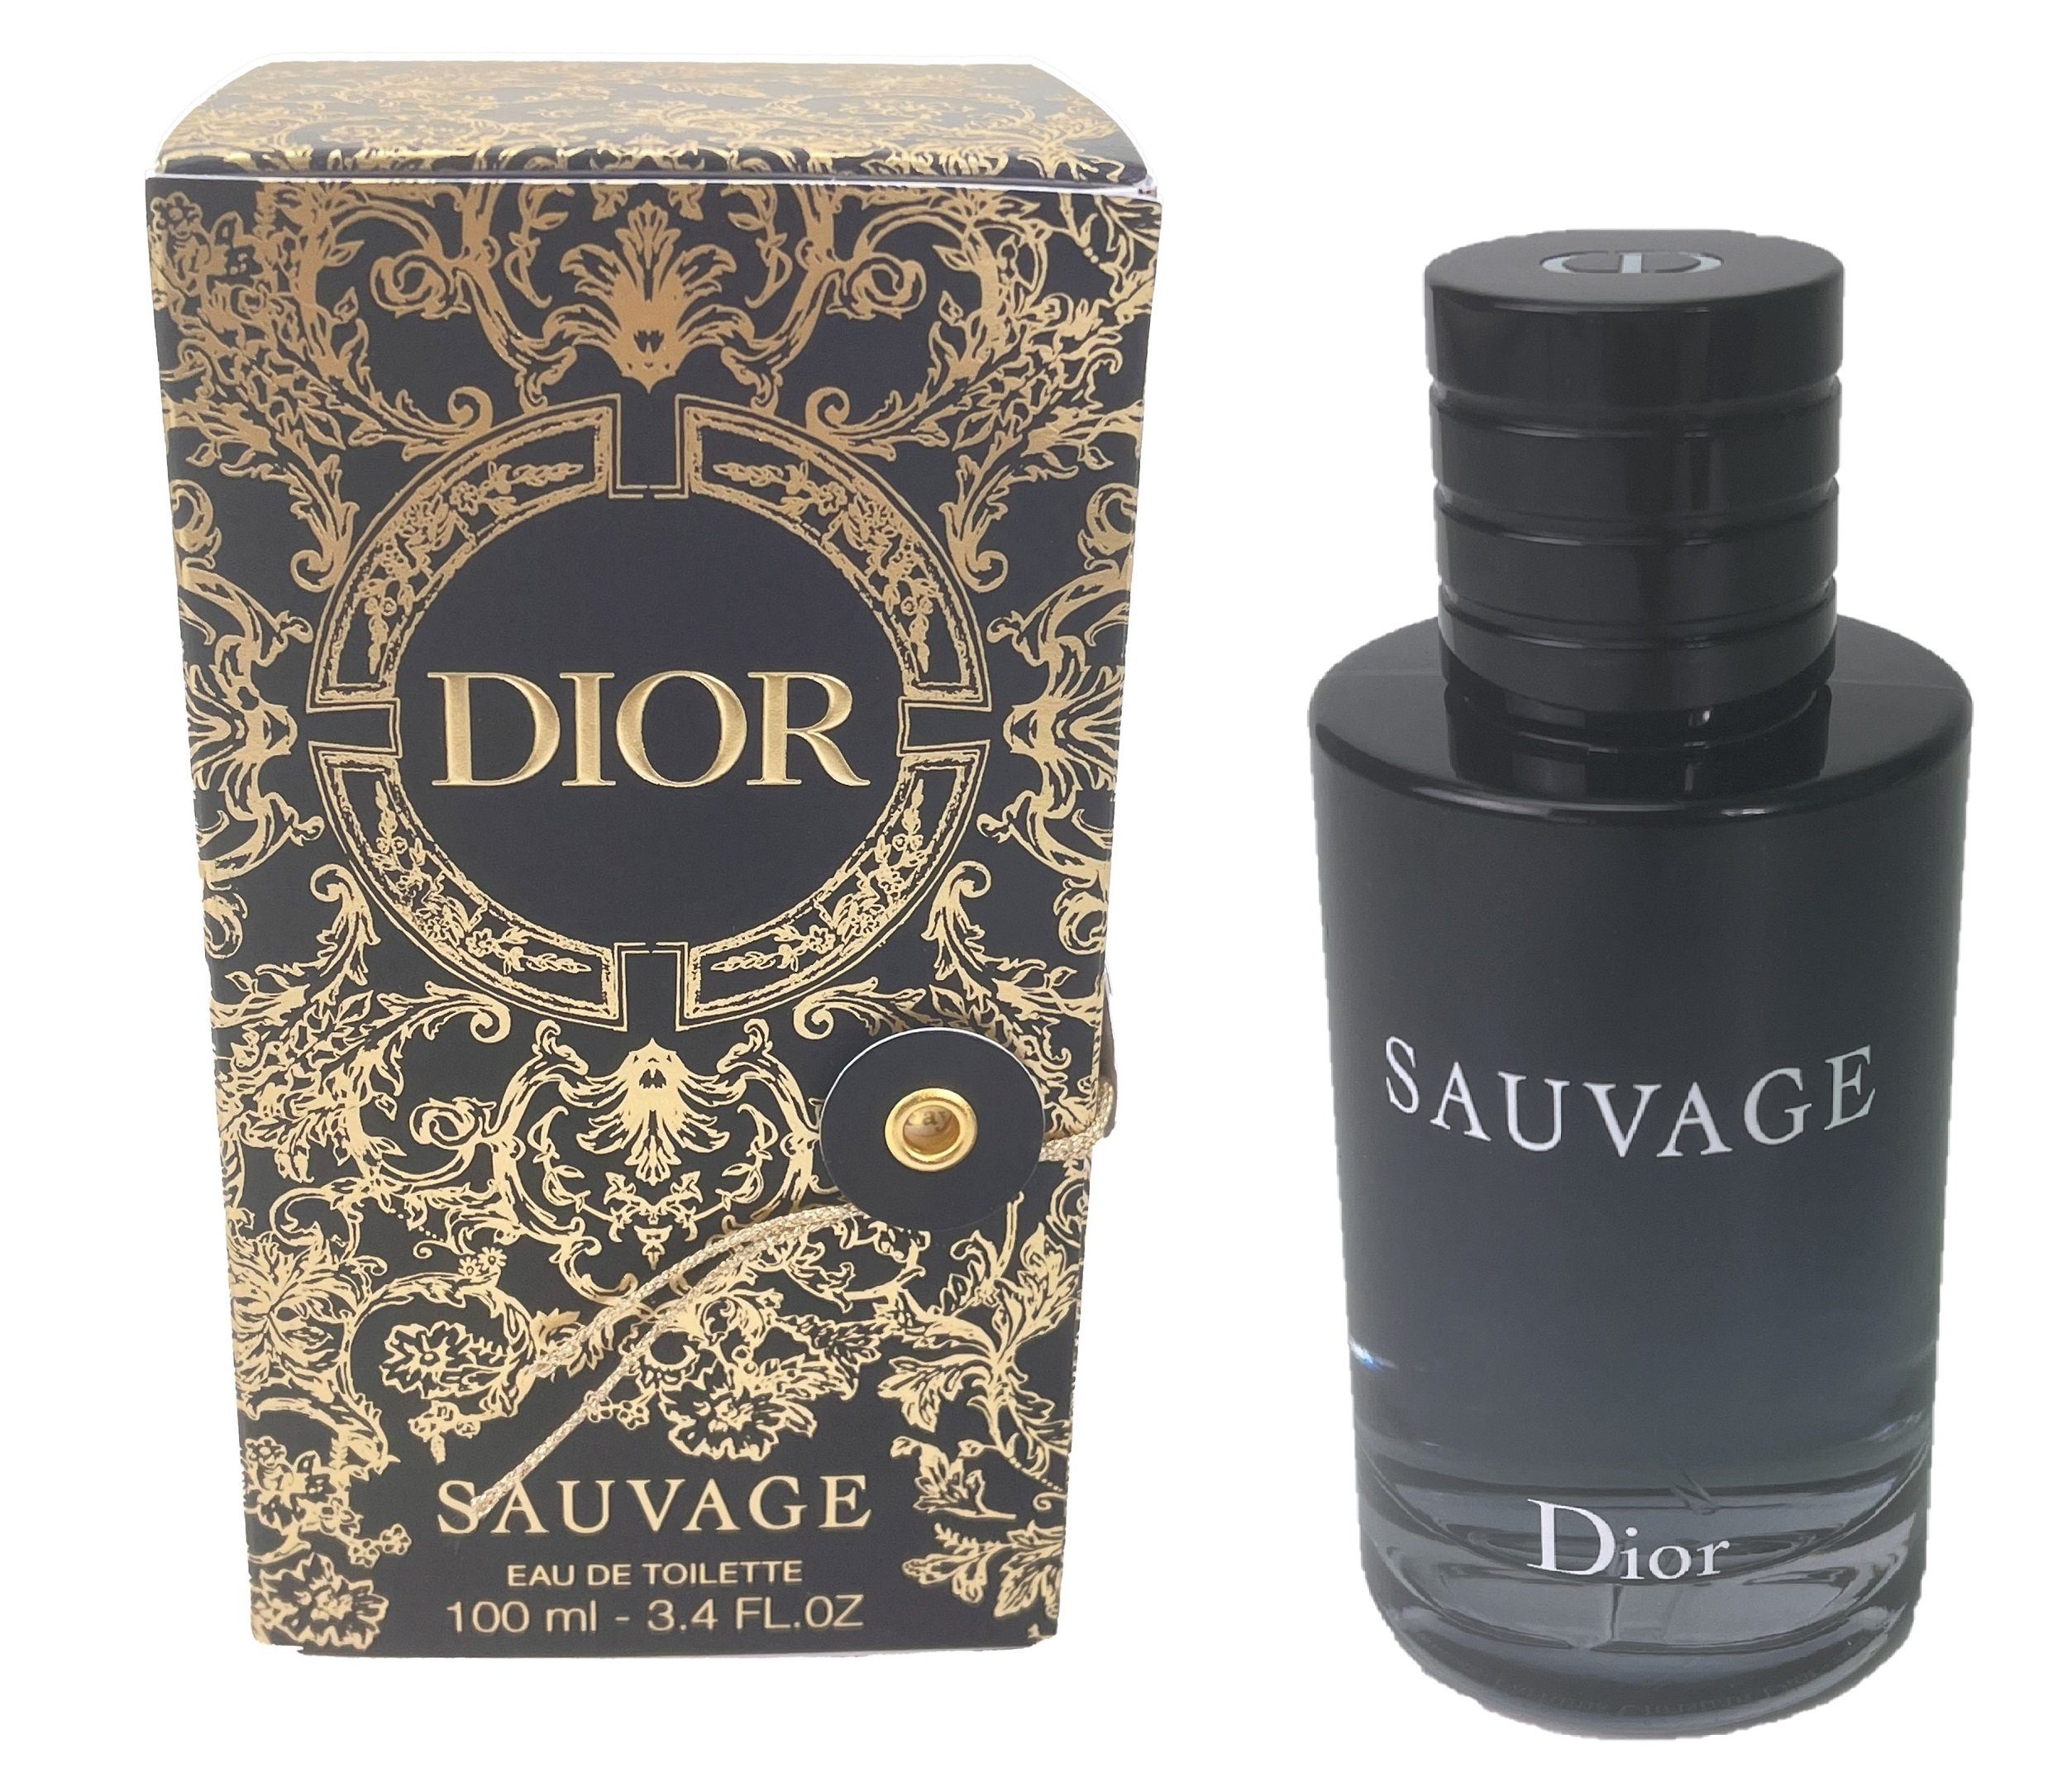 Eau Eau Dior de Toilette Spray, limitierte Dior Toilette de Sauvage Ausgabe